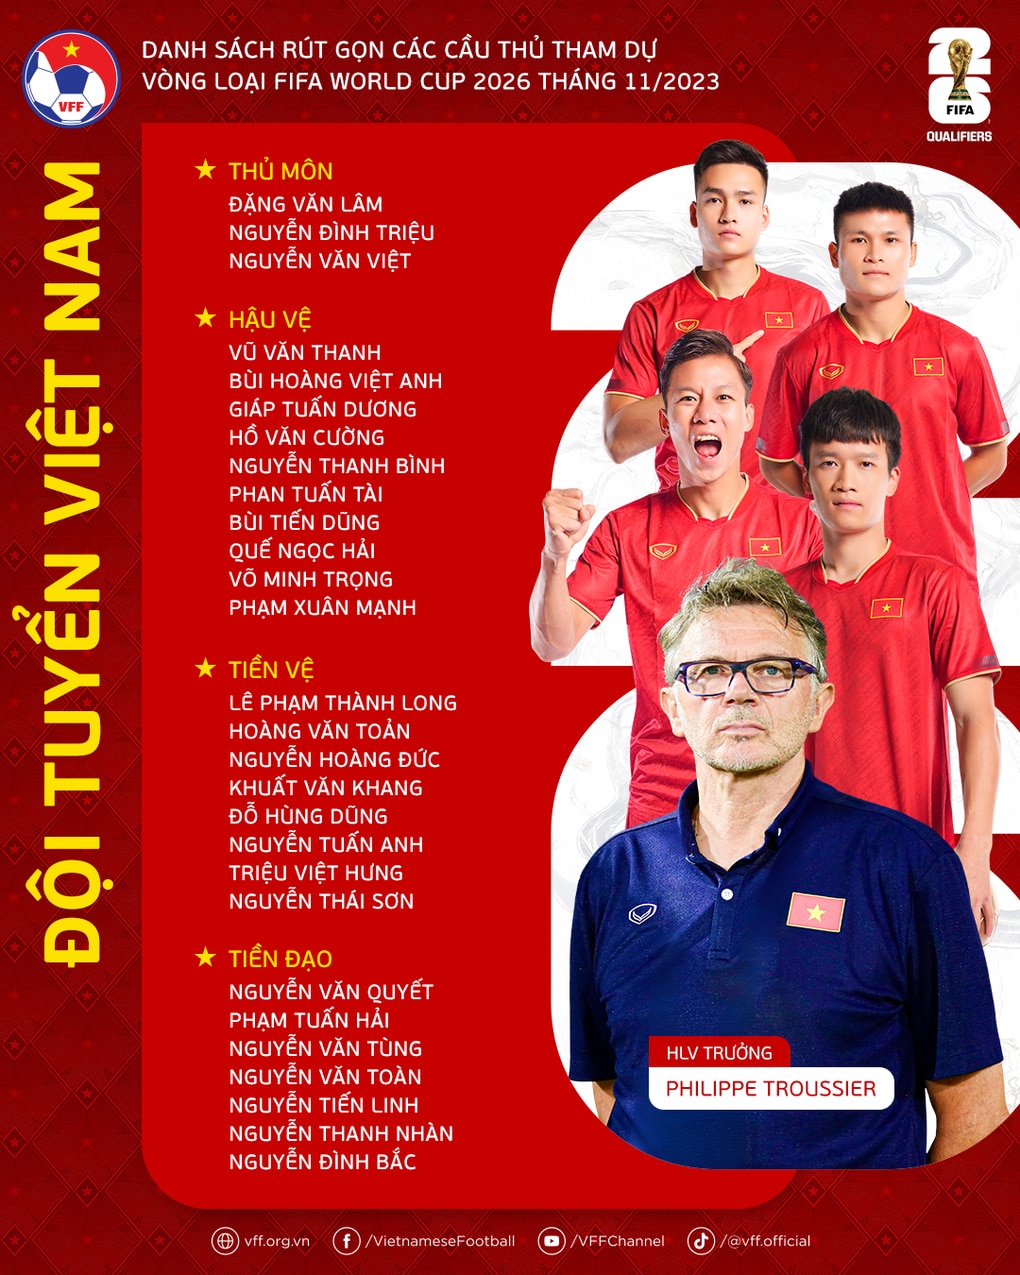 HLV Troussier loại 3 cầu thủ, tuyển Việt Nam chốt đội hình sang Philippines - 3